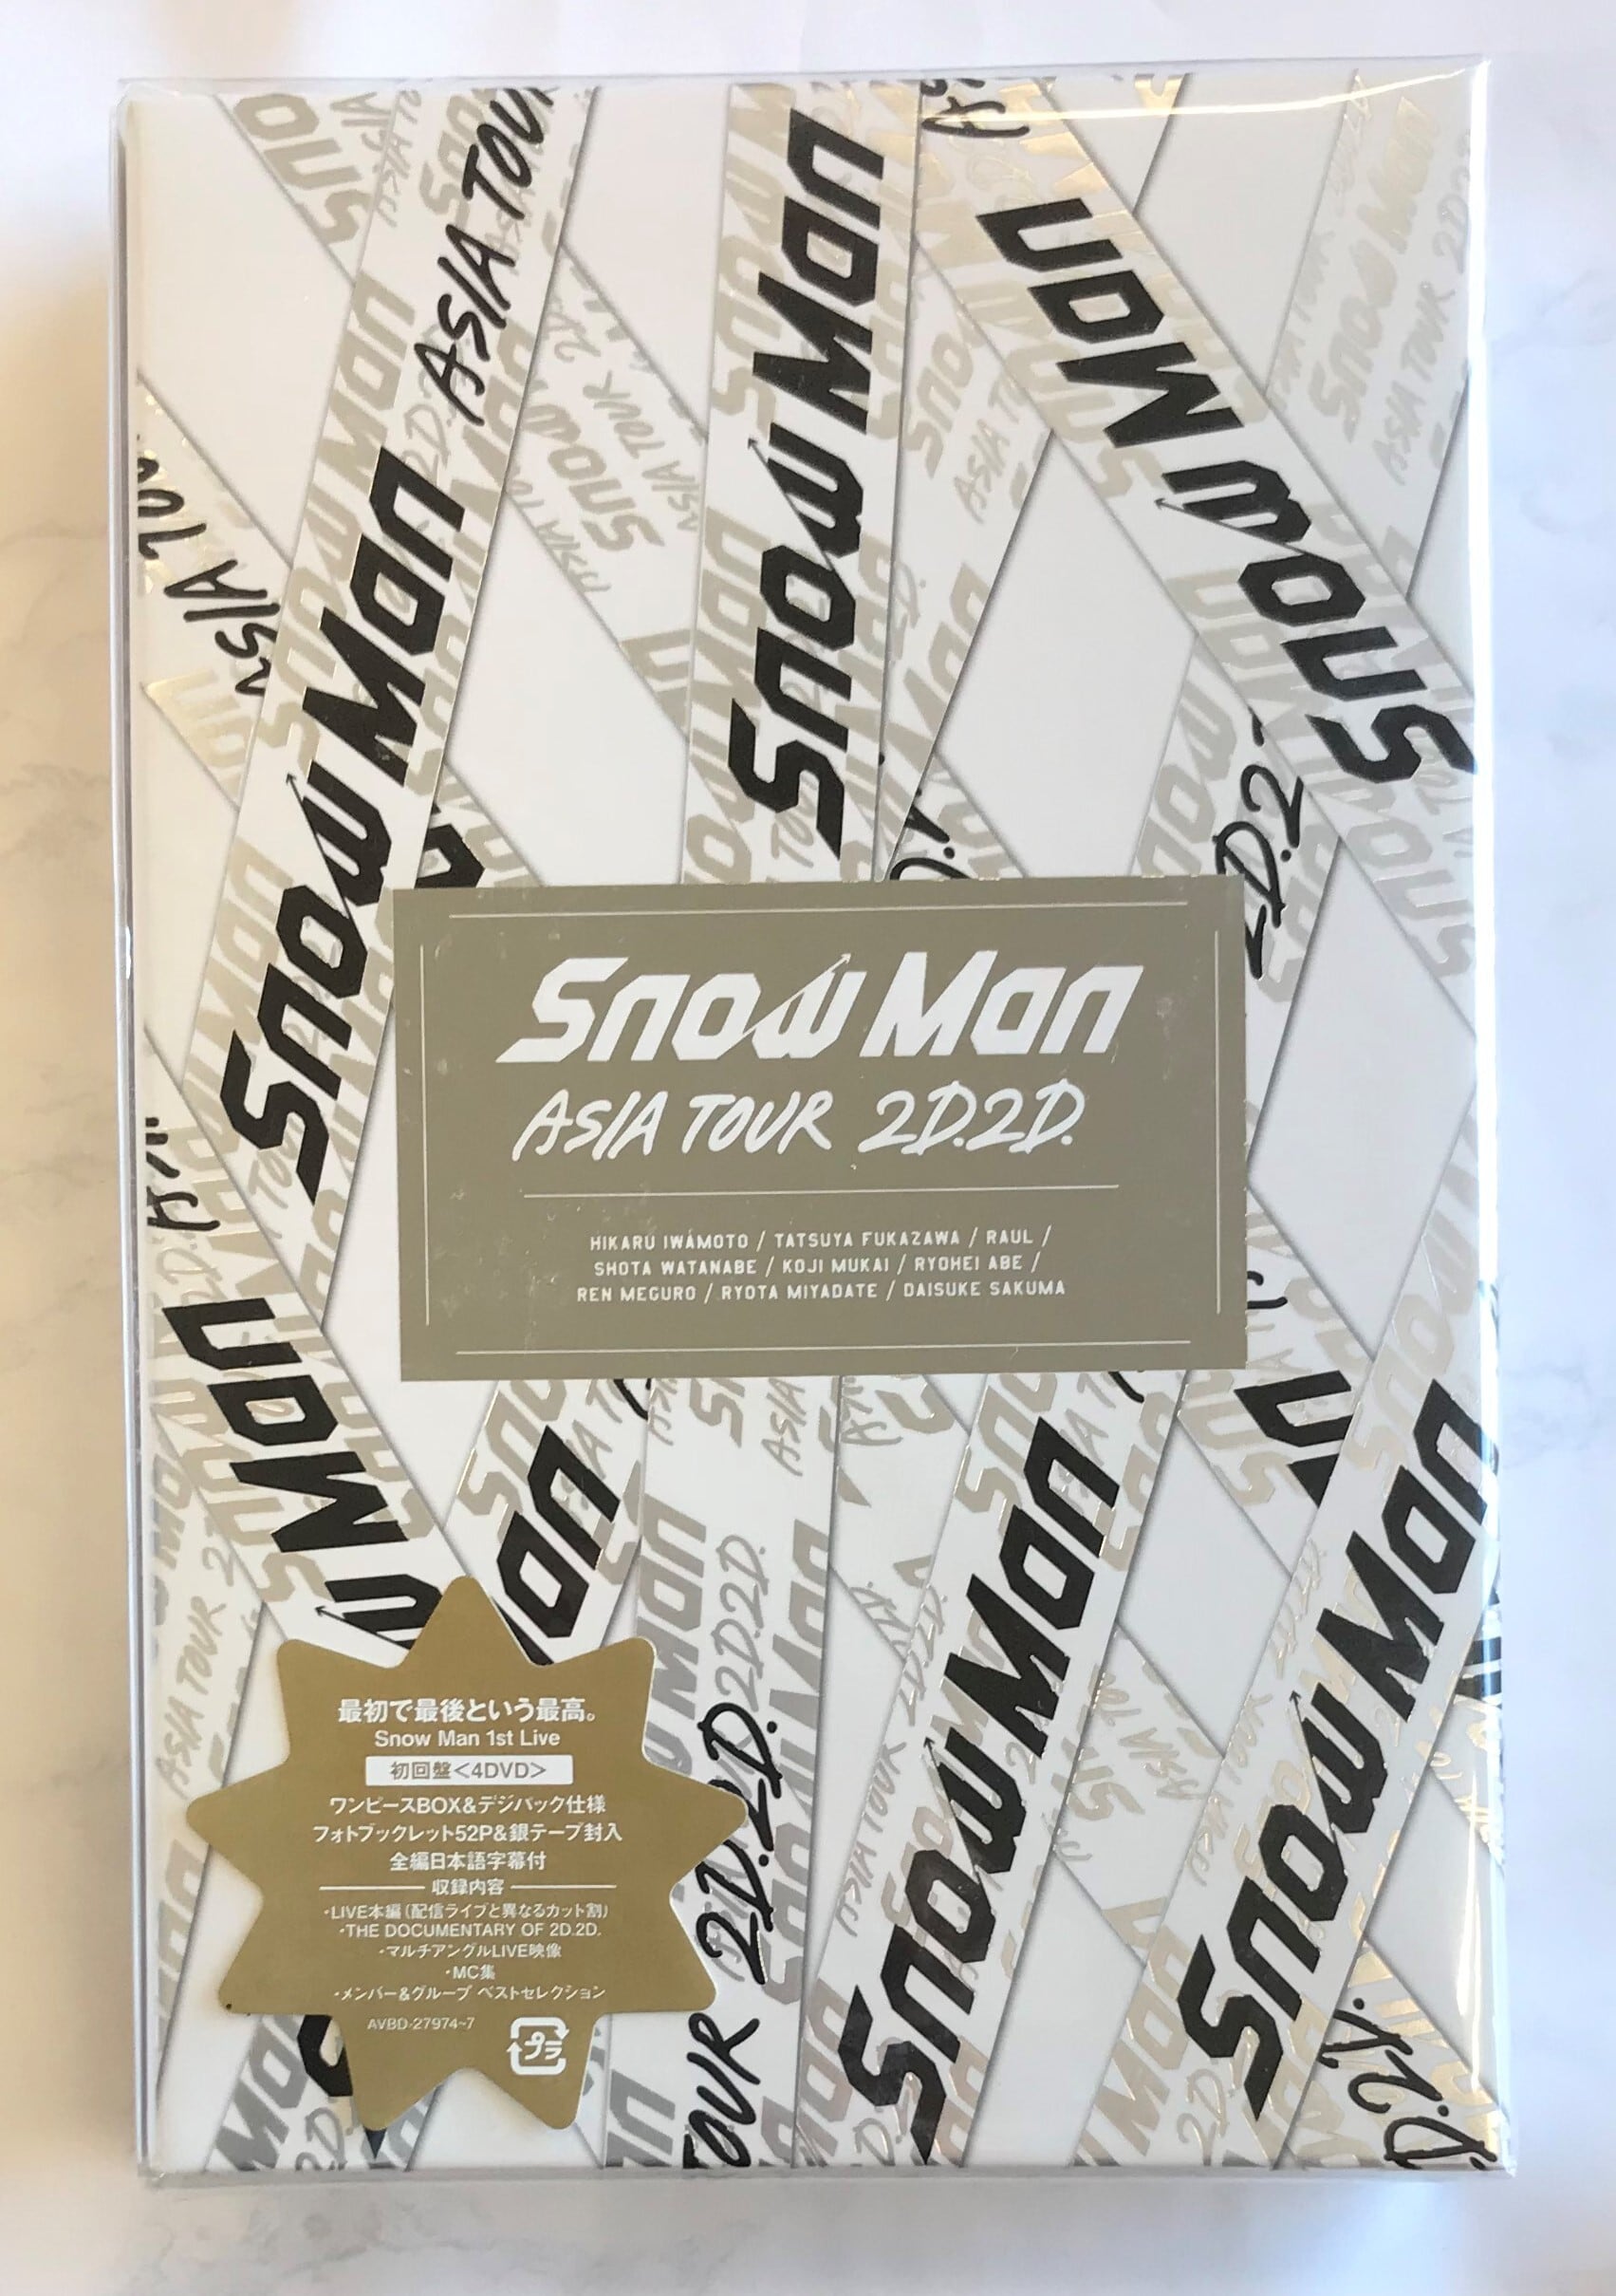 SnowMan 2D2D 初回盤 DVD